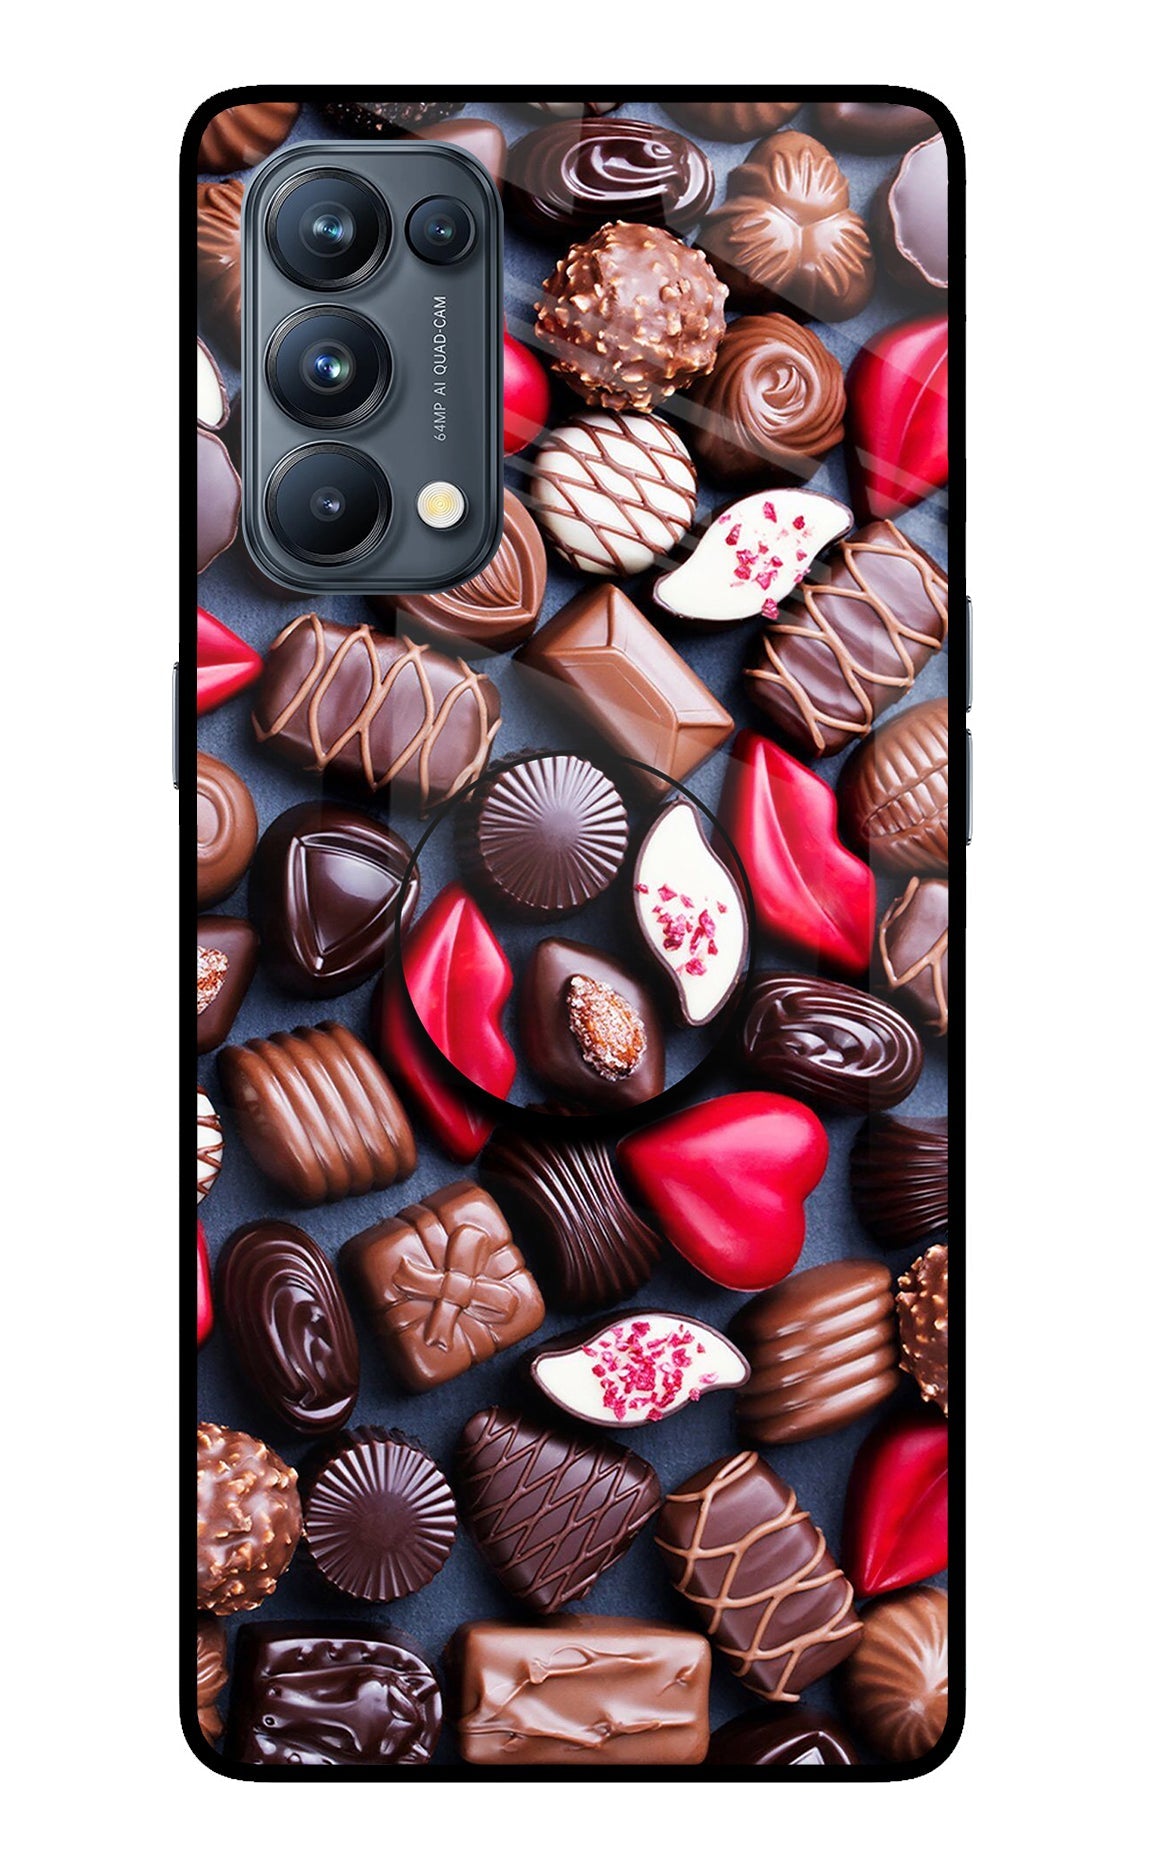 Chocolates Oppo Reno5 Pro 5G Glass Case